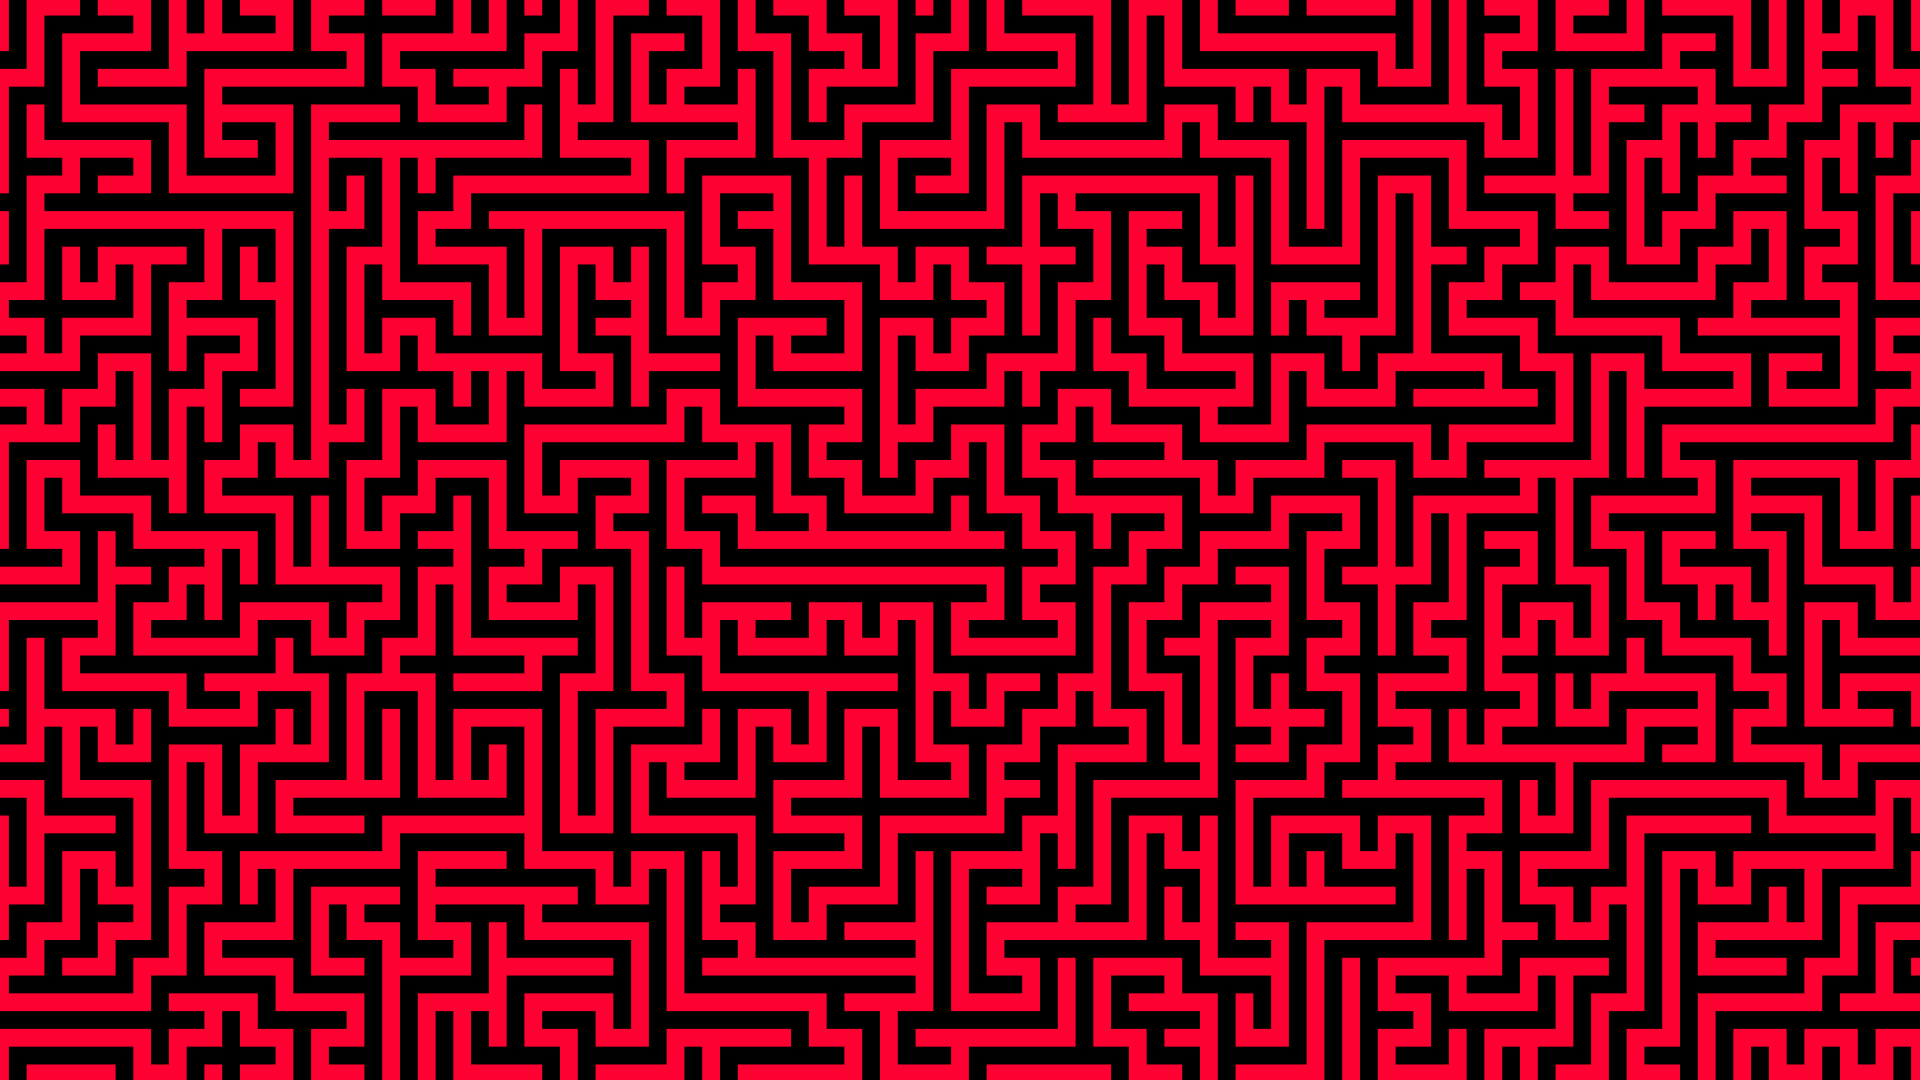 Maze (Other), Abstract maze design, Abstract maze wallpaper, 1920x1080 Full HD Desktop